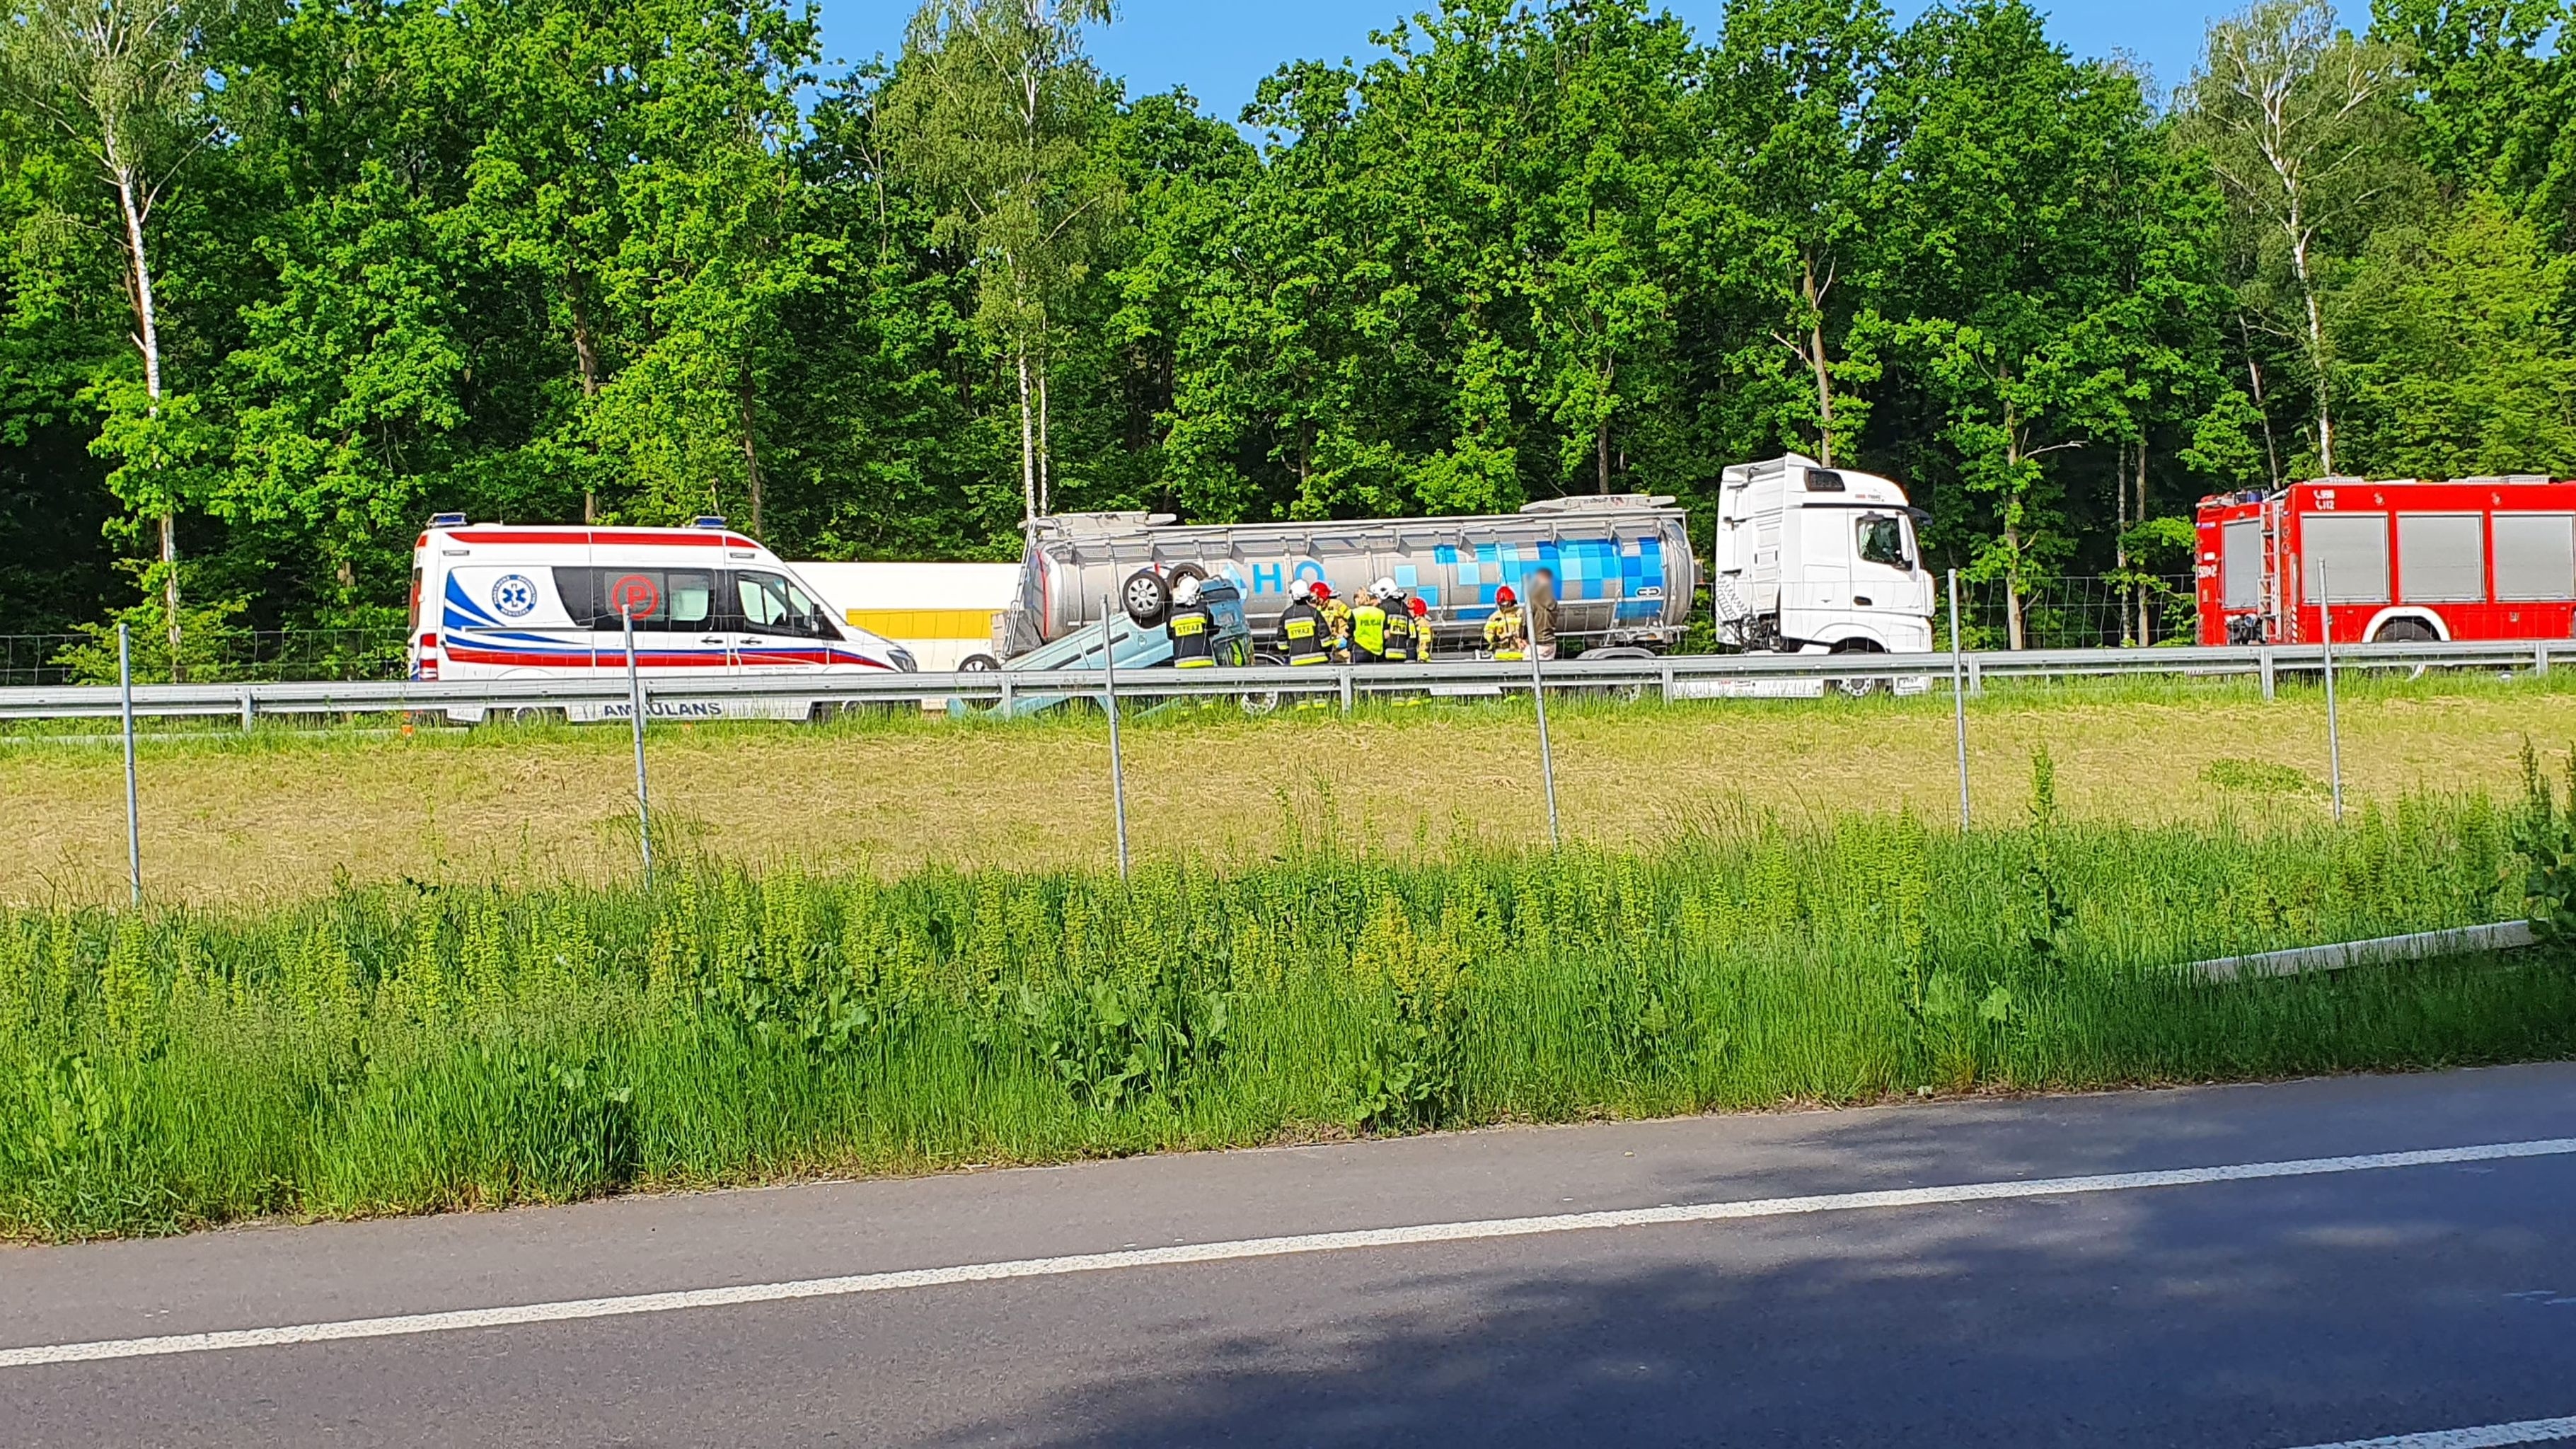 Dachowanie citroena na drodze ekspresowej. Utrudnienia w ruchu na trasie Lublin – Ryki (zdjęcia)